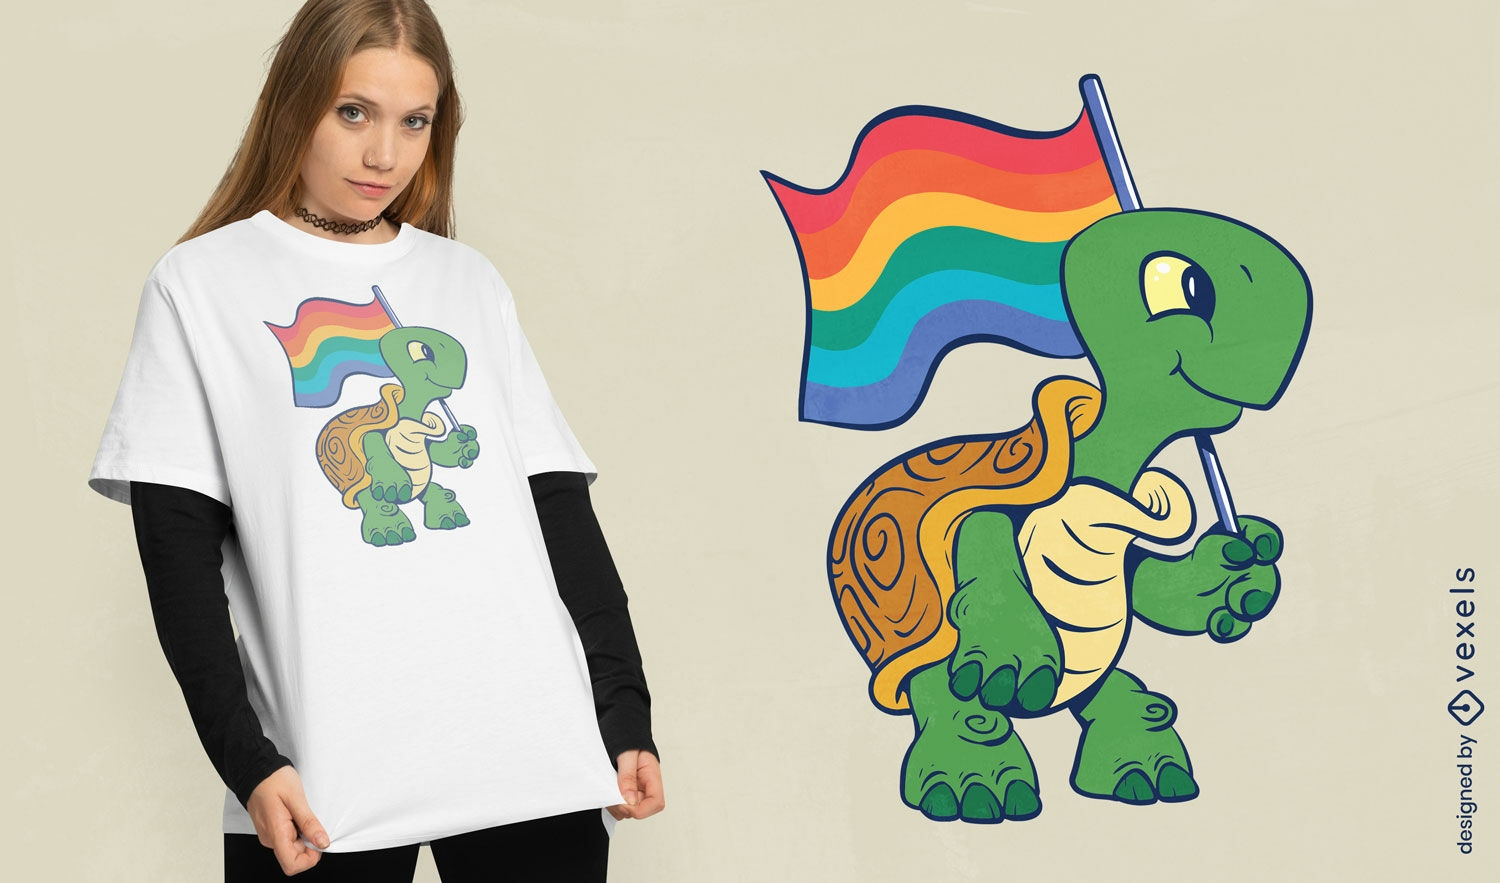 Schildkröte mit Stolzflaggen-T-Shirt-Design